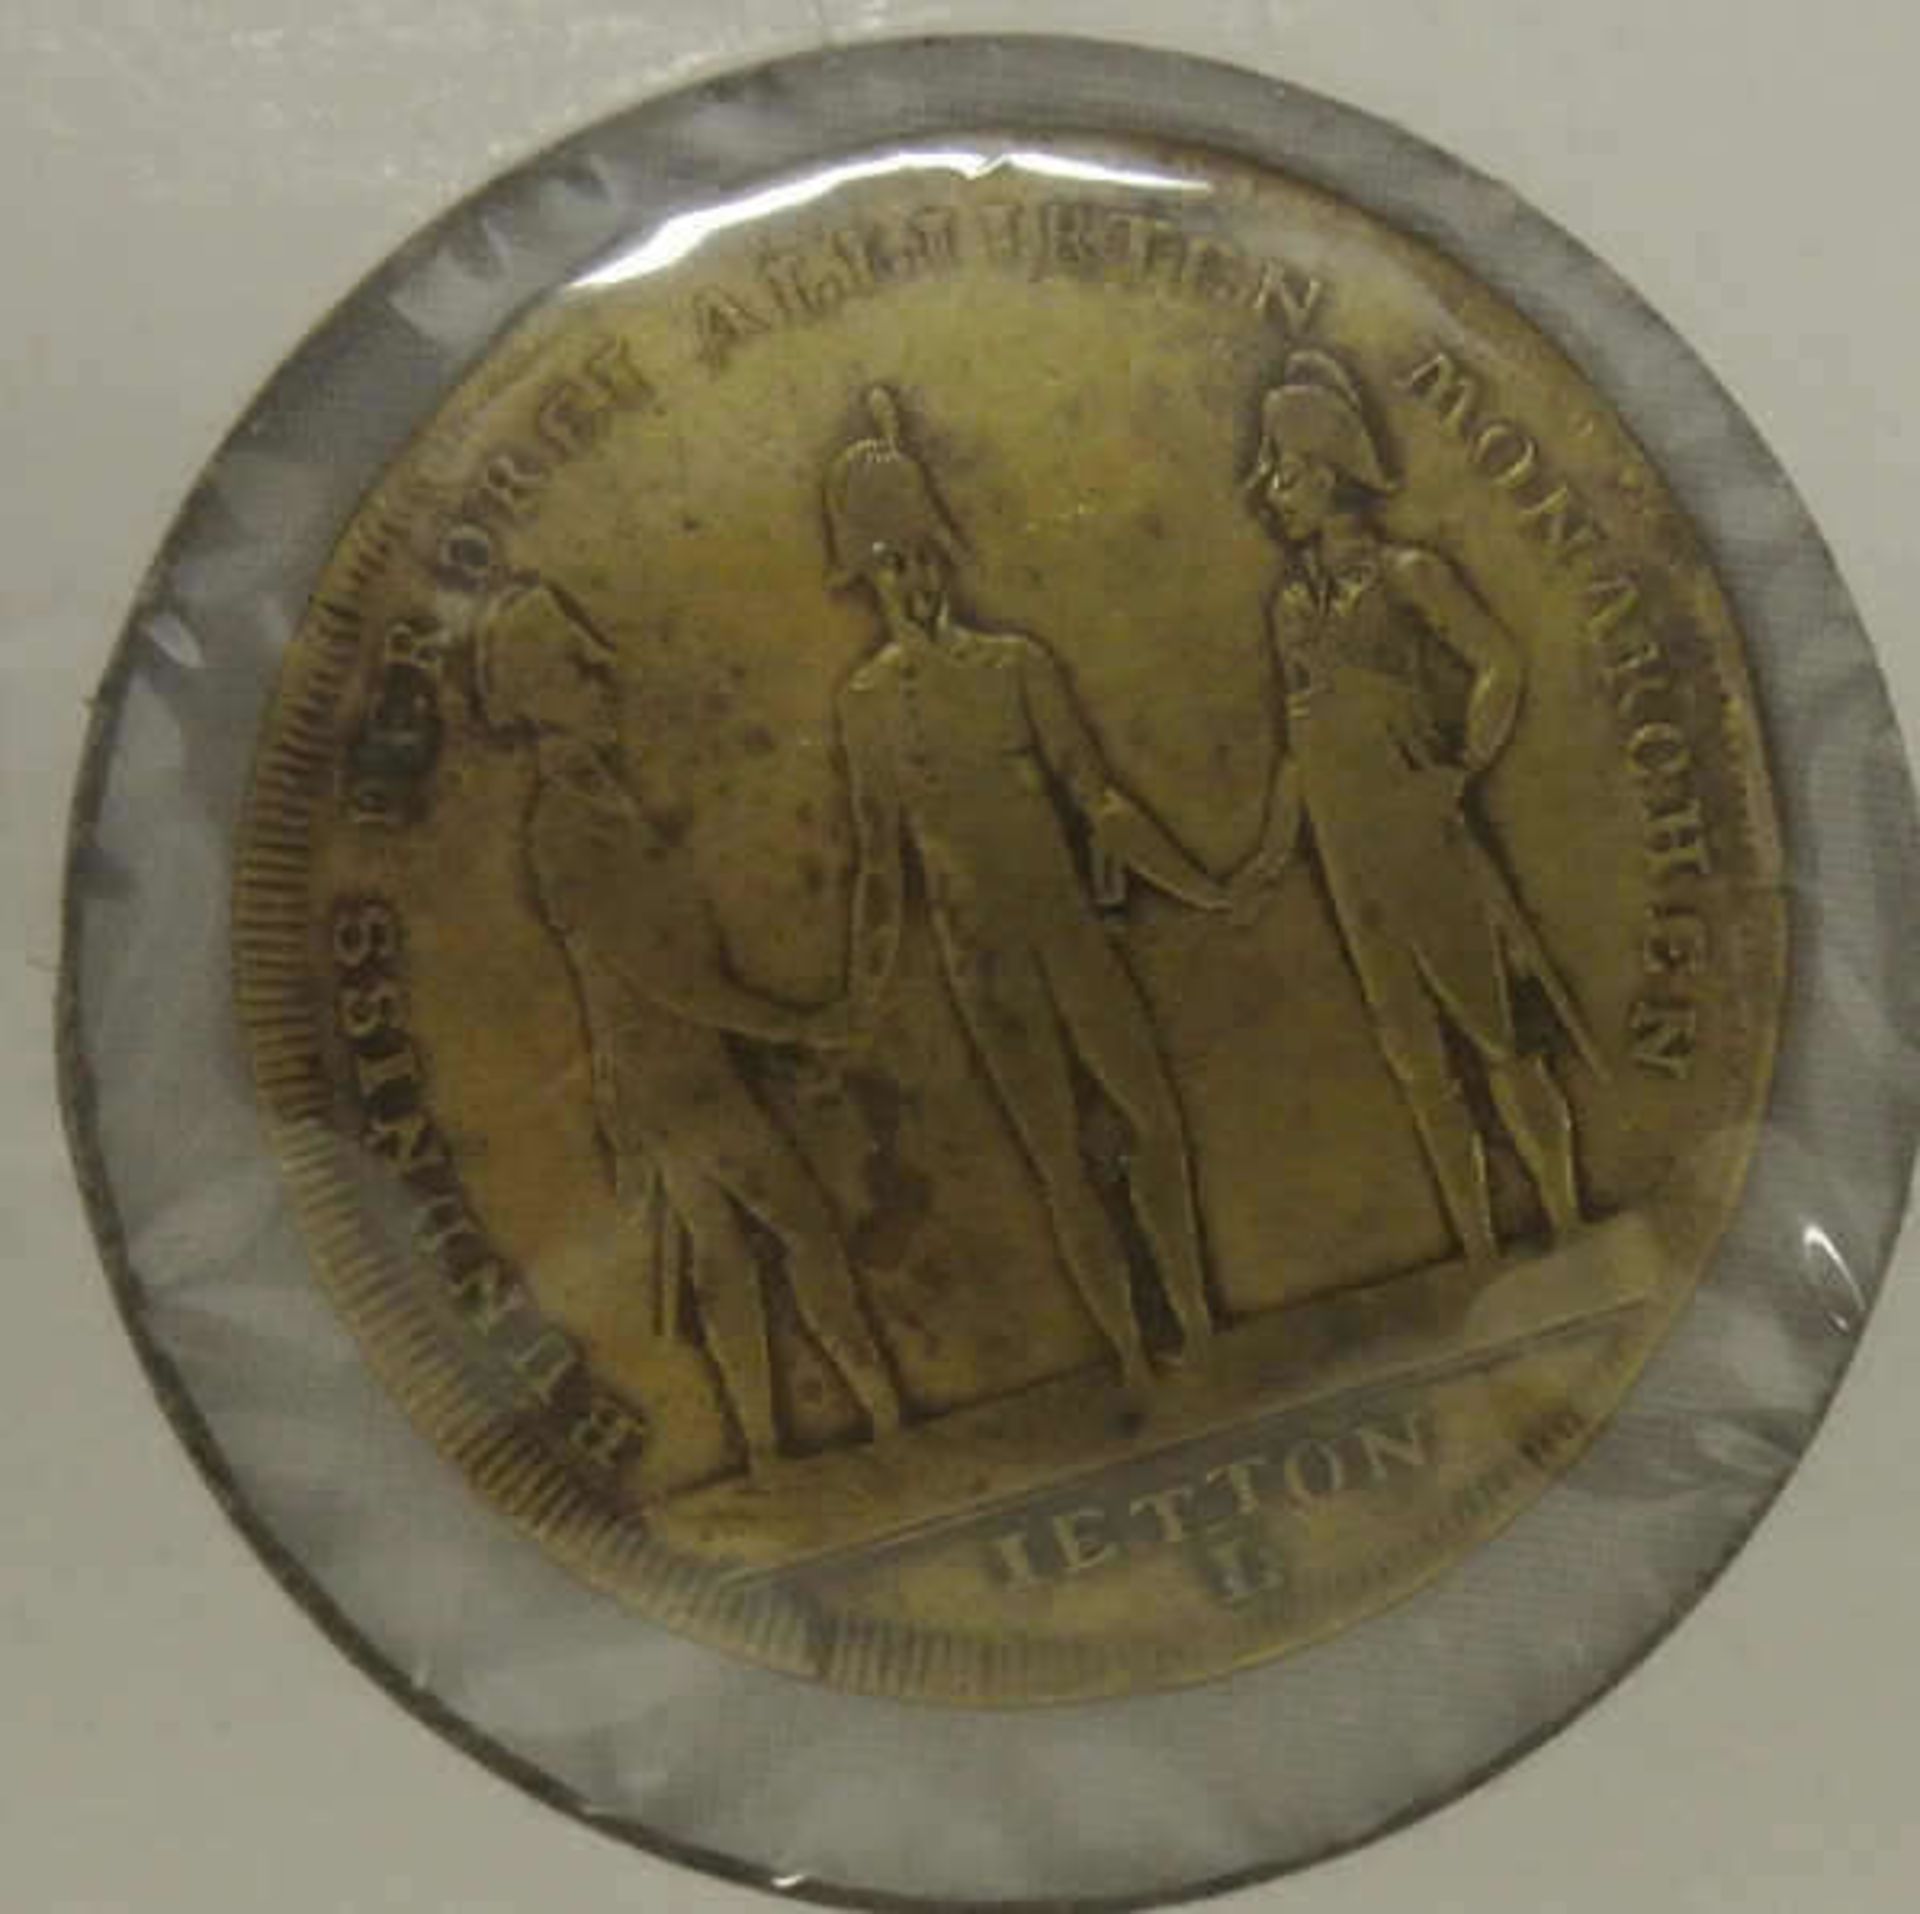 Medaille / Jeton Hanau 1813, Messing (von Lauer) a.d. letzte Schlacht der Aliierten gegen die